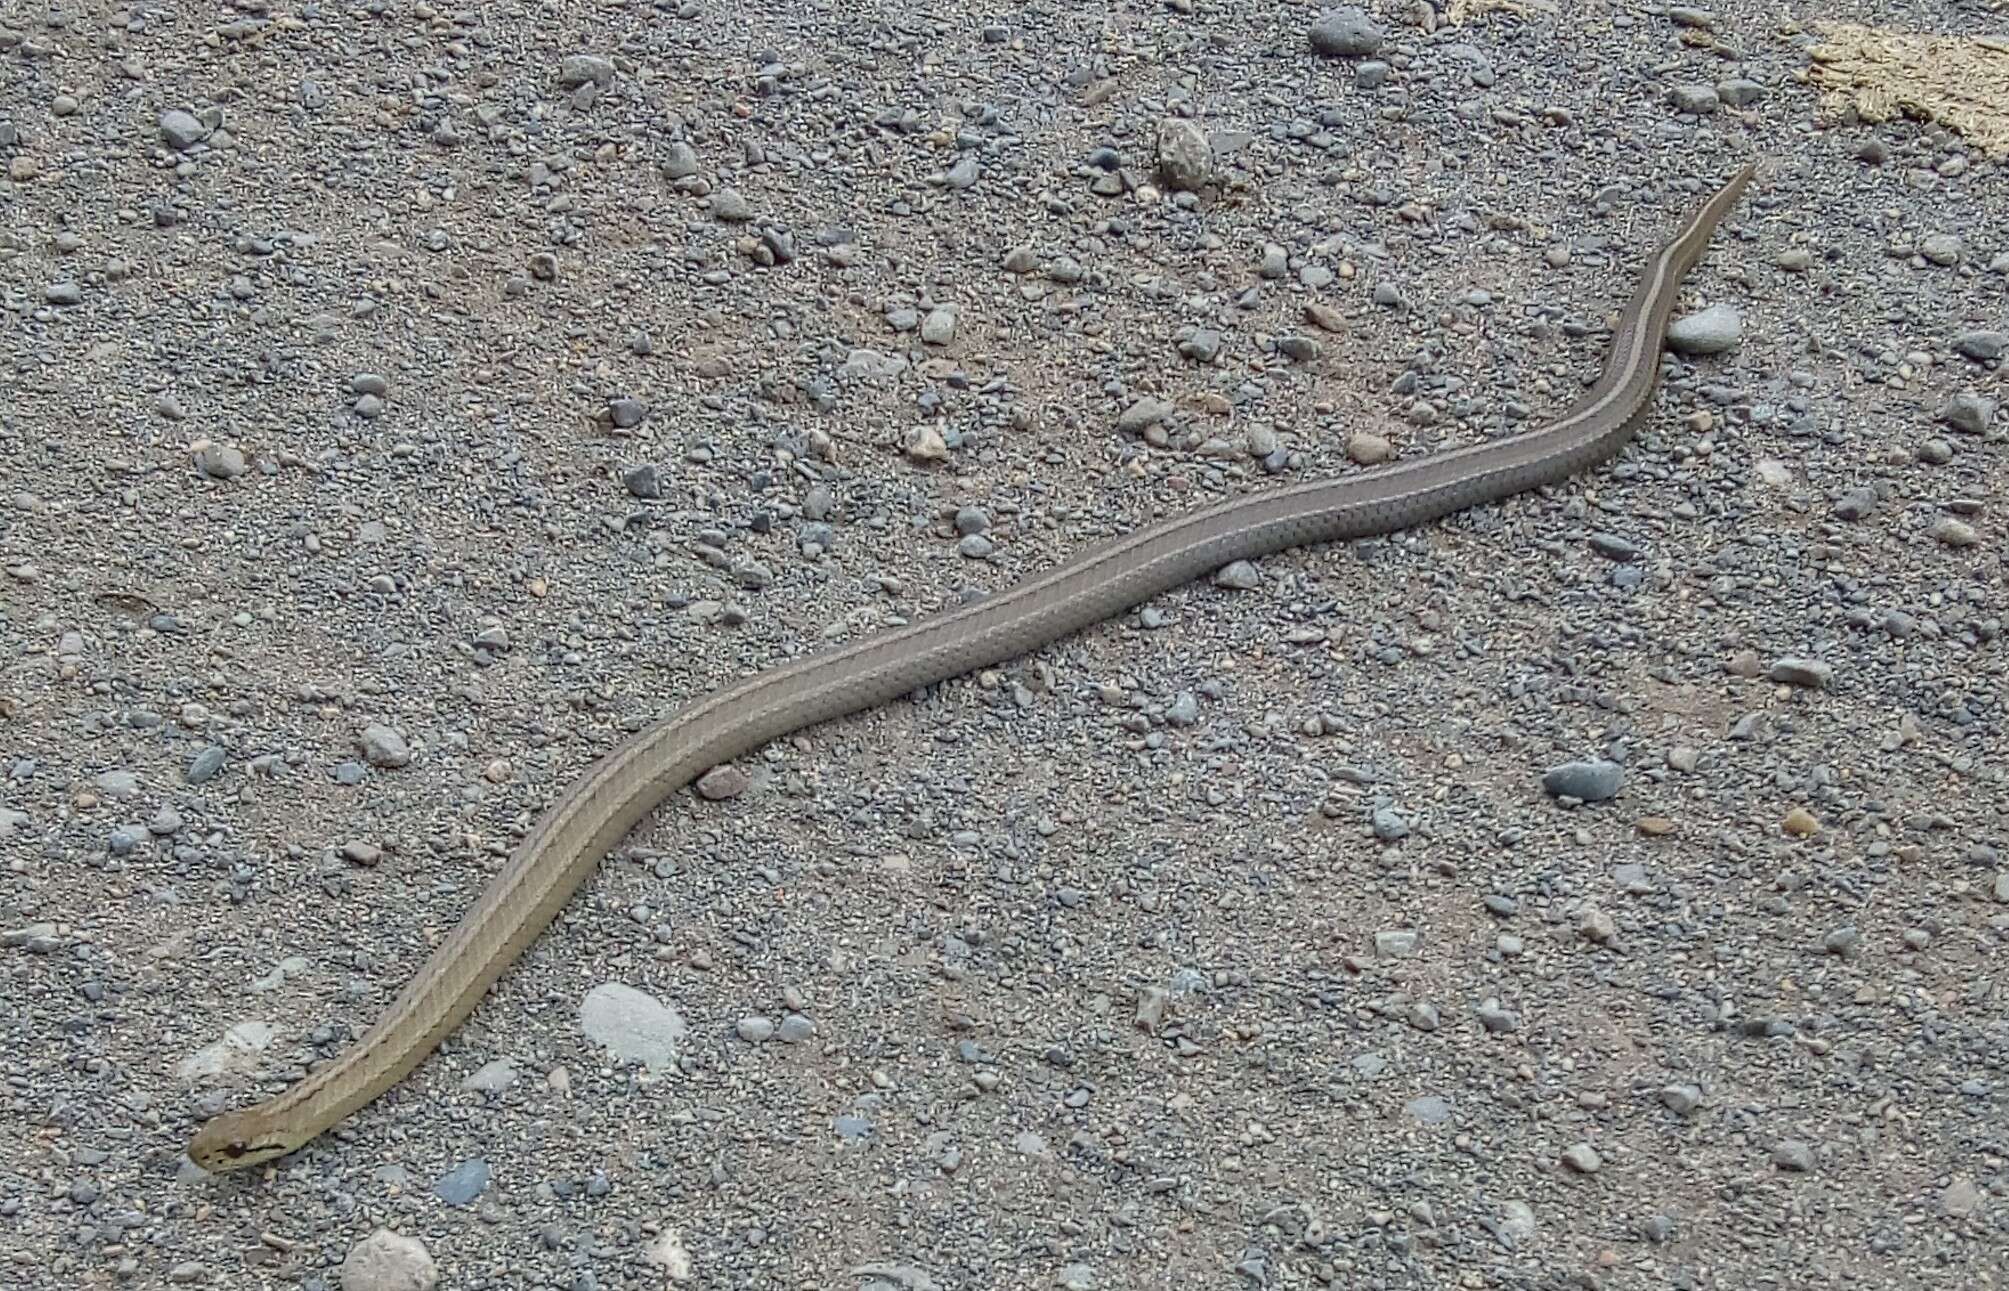 Image of Chilean Slender Snake